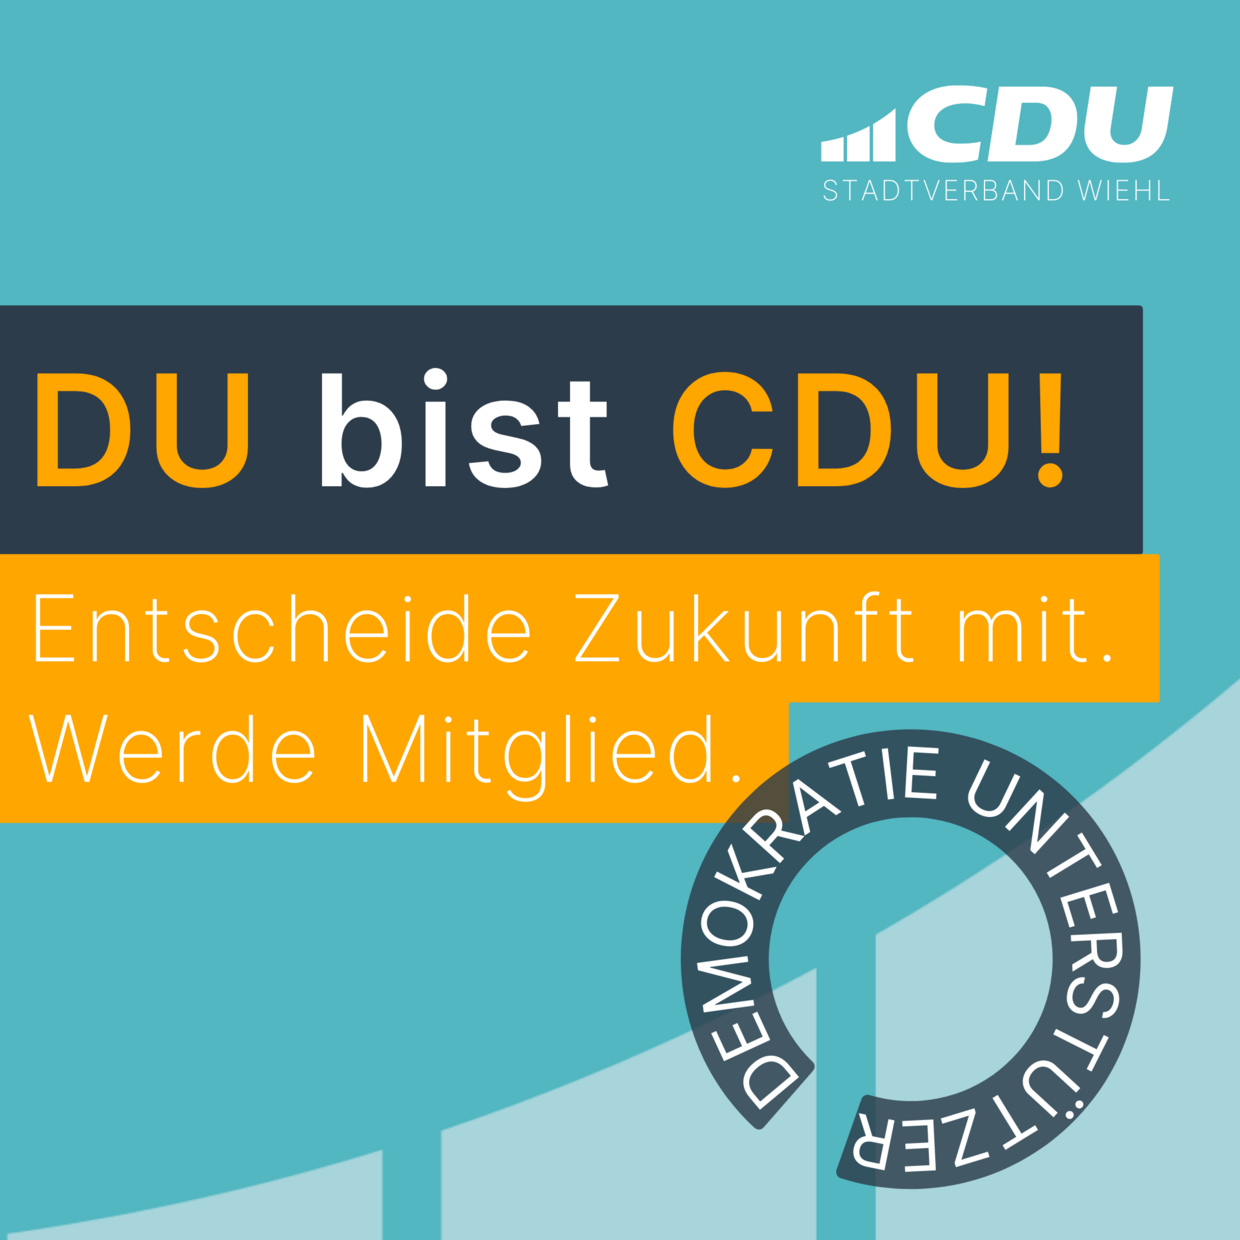 Mitglied werden bei der CDU - Link zur Anmeldeseite. Mit wenigen Klicks Mitglied werden...